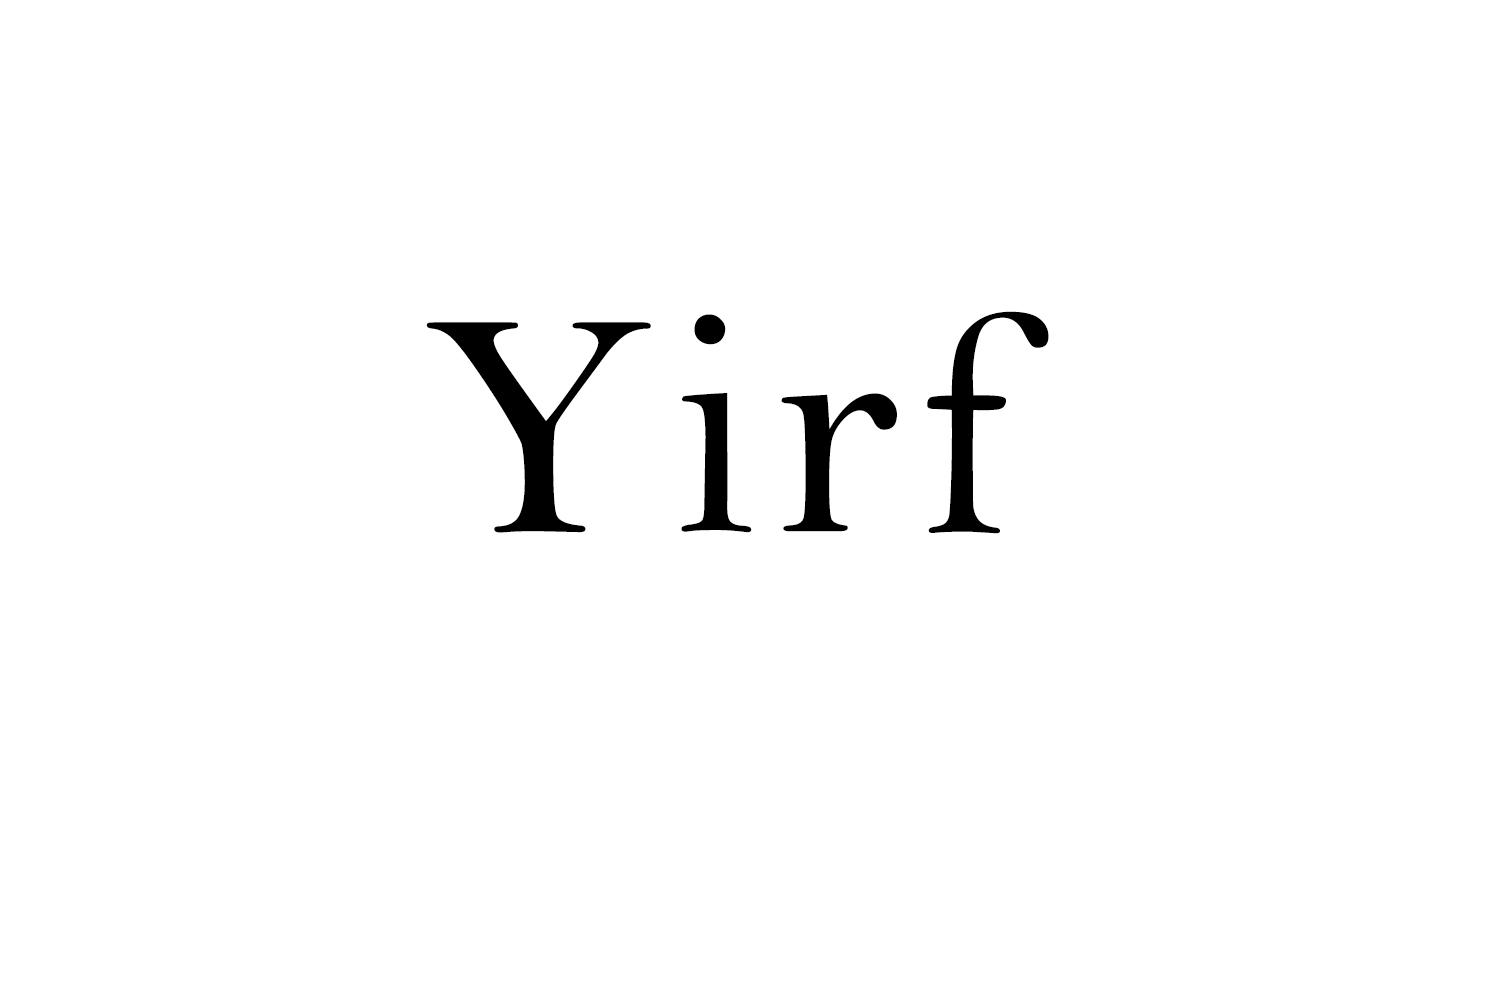 Yirf